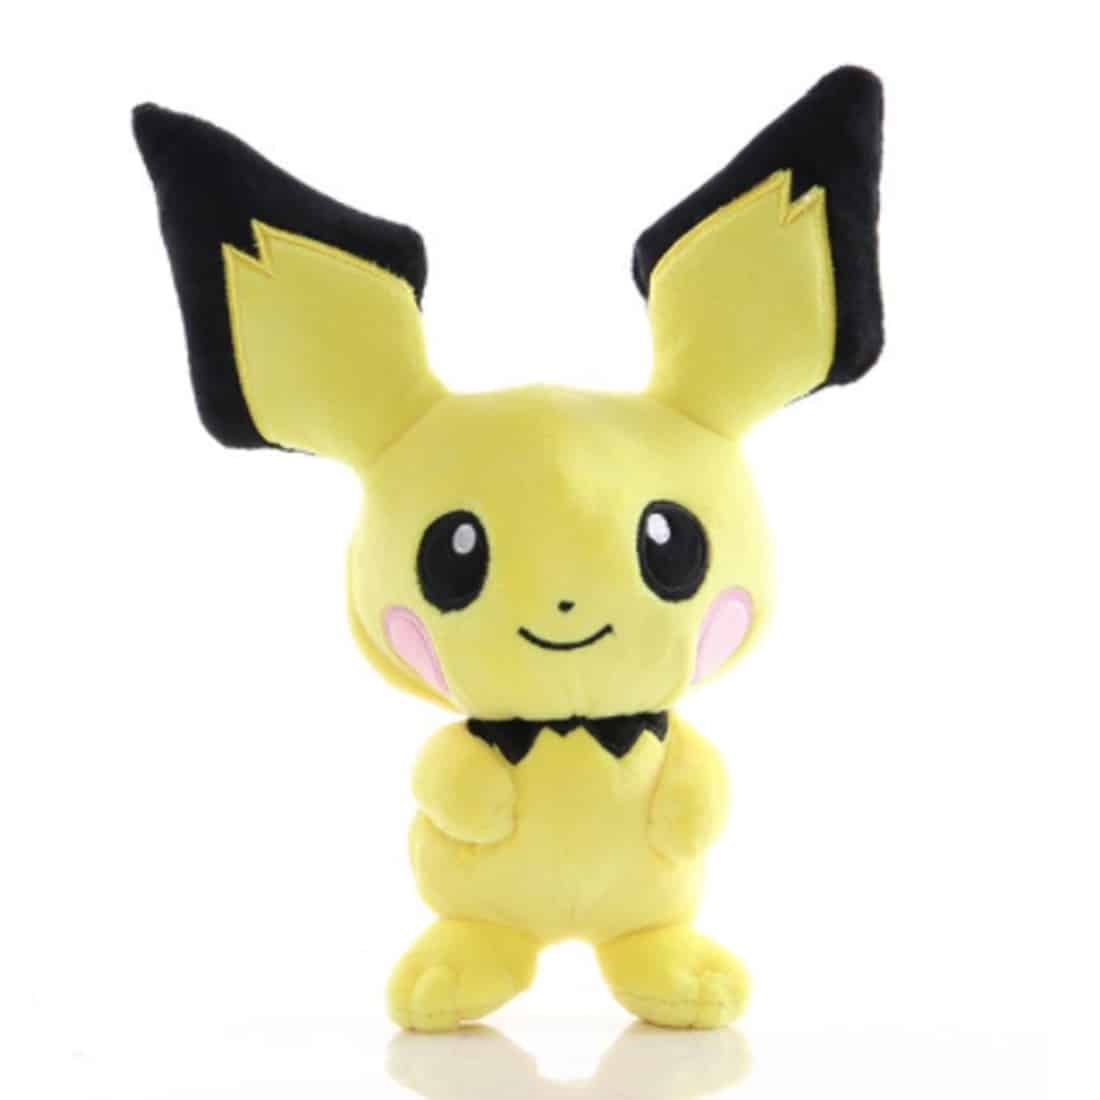 Pichu plush toy Pikachu plush toy Pokemon a7796c561c033735a2eb6c: Yellow